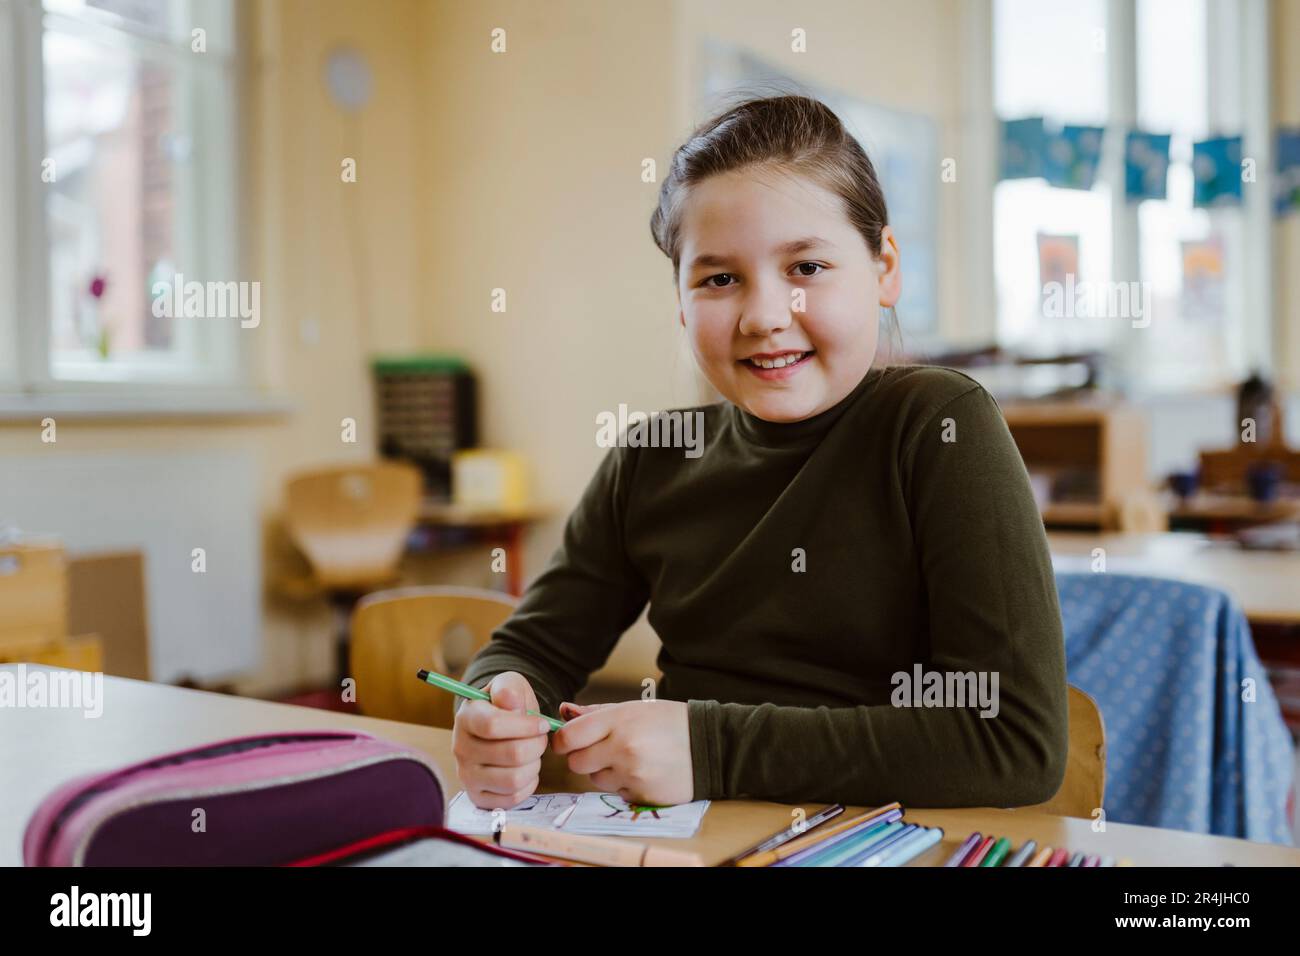 Ritratto di una pupilla sorridente seduta alla scrivania in aula Foto Stock